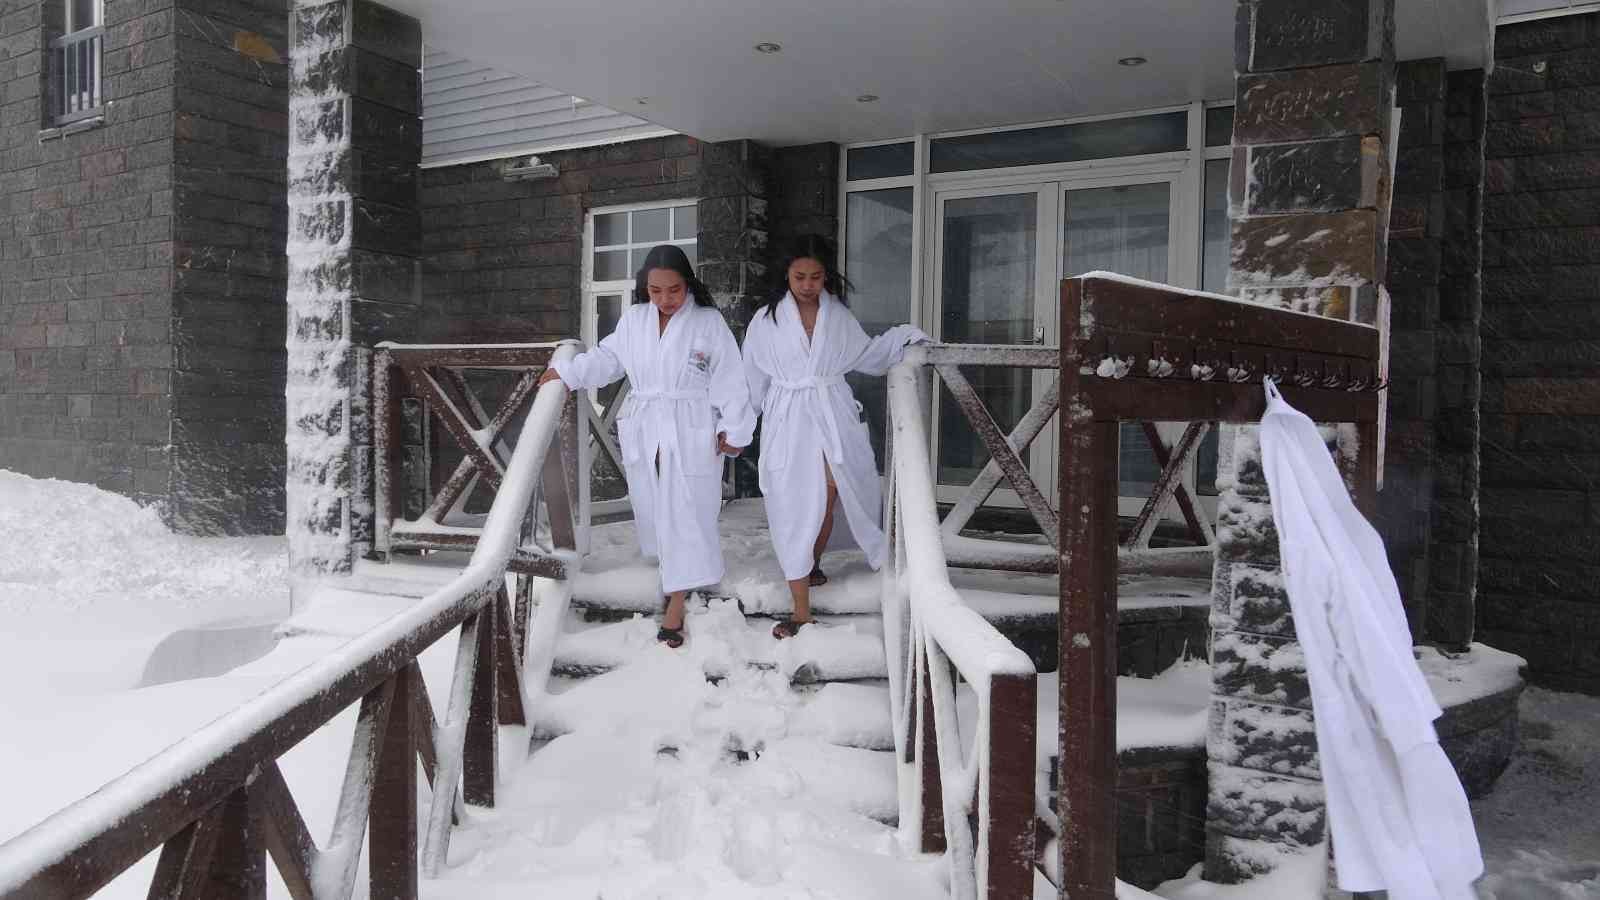 (Özel) Uludağ’a gelen turistler dondurucu soğukta sıcak havuzun keyfini çıkartıyor